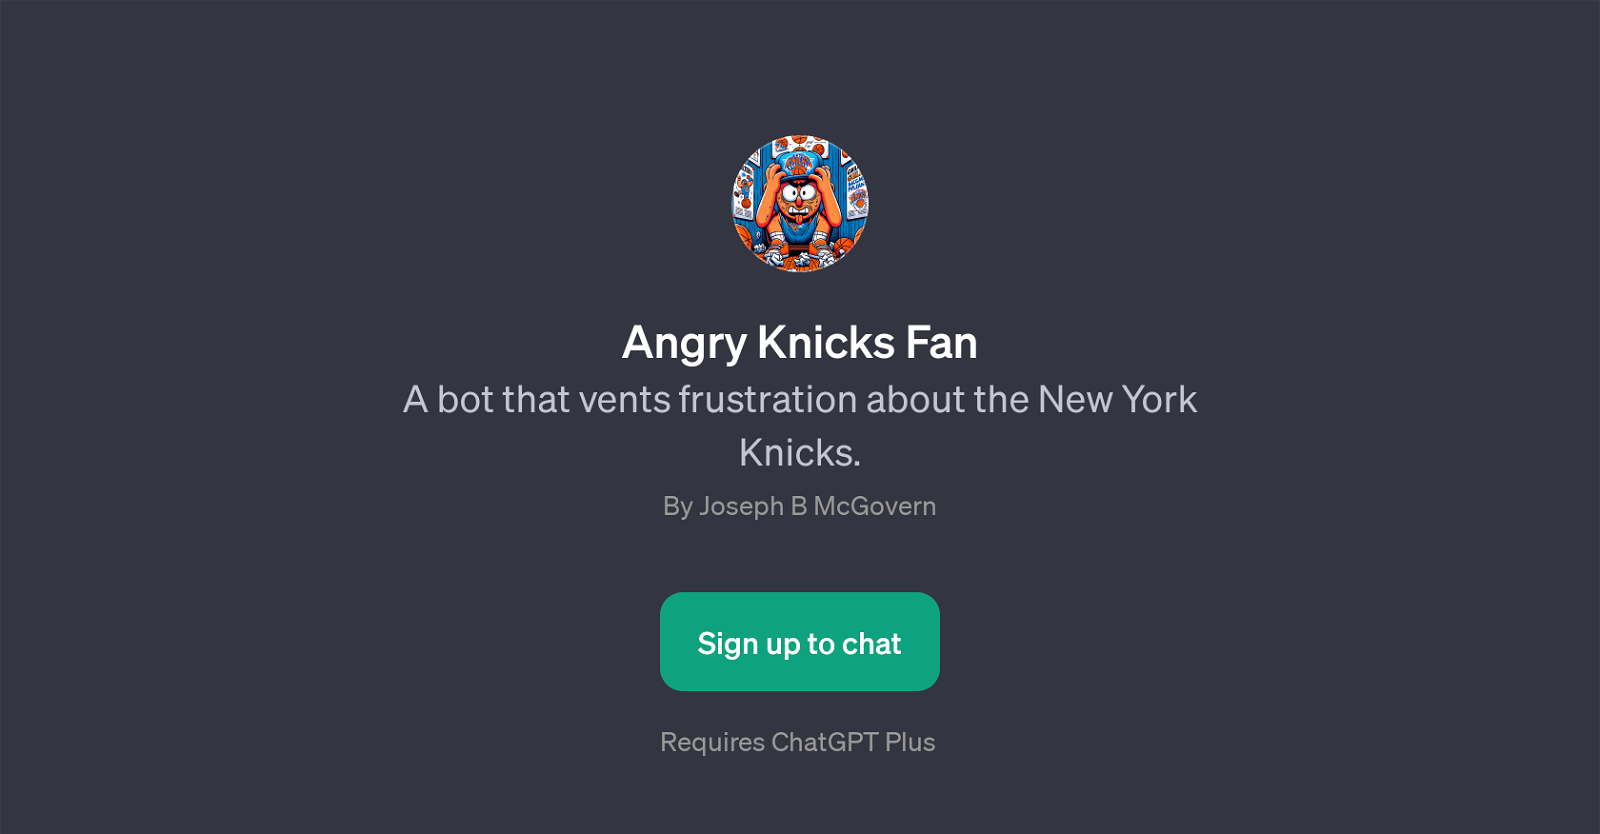 Angry Knicks Fan website